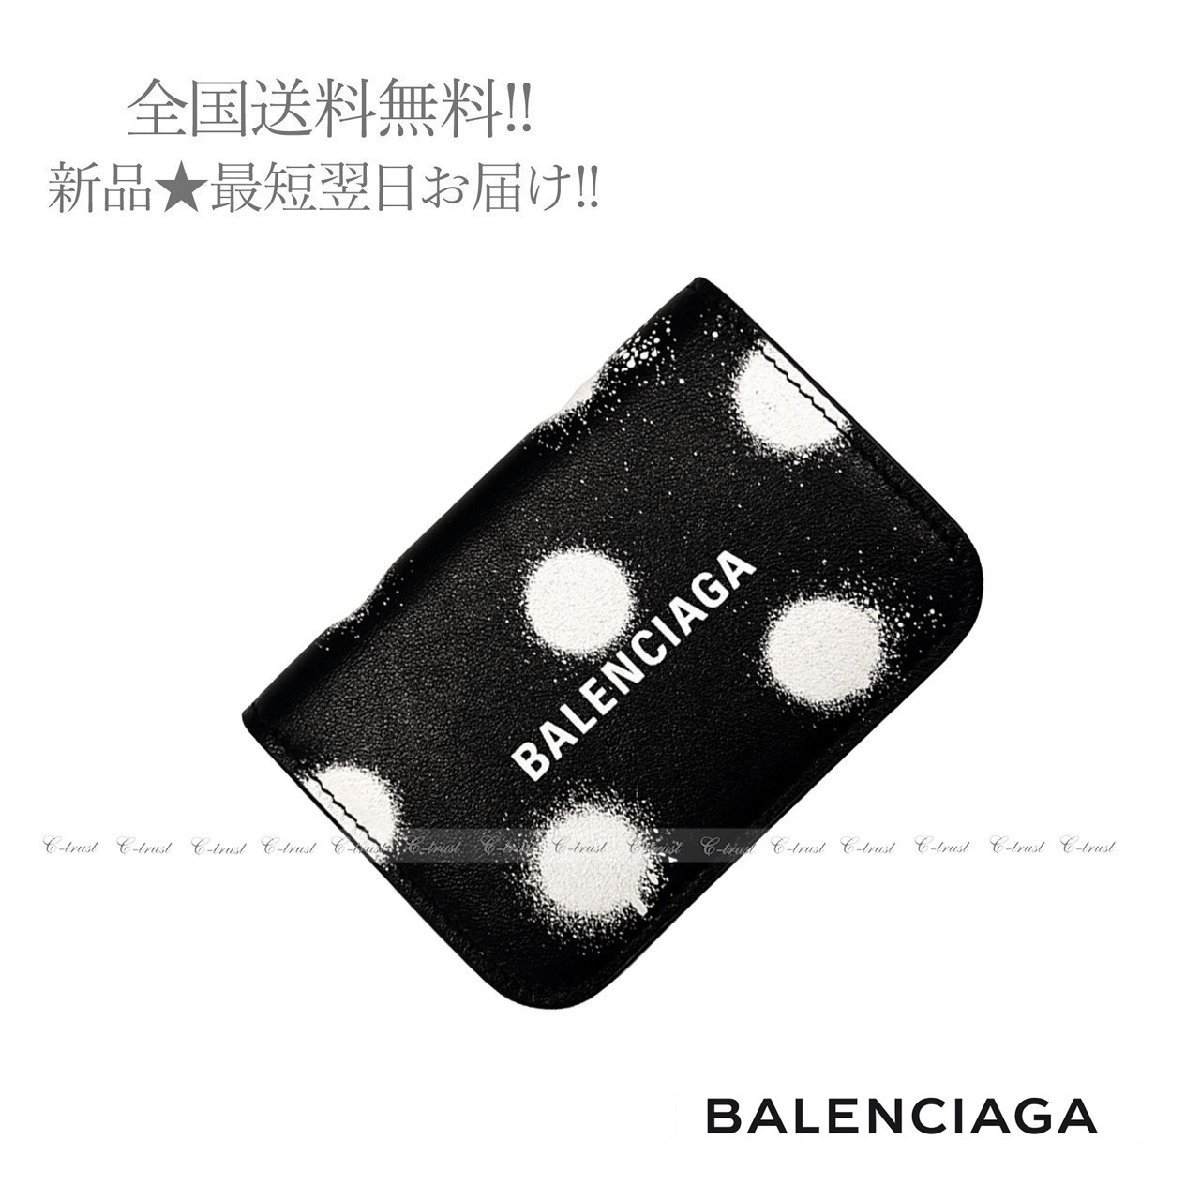 J586.. BALENCIAGA バレンシアガ 財布 CASH ミニ ウォレット 三つ折り ロゴ イタリア製 ★ 1097 ブラック